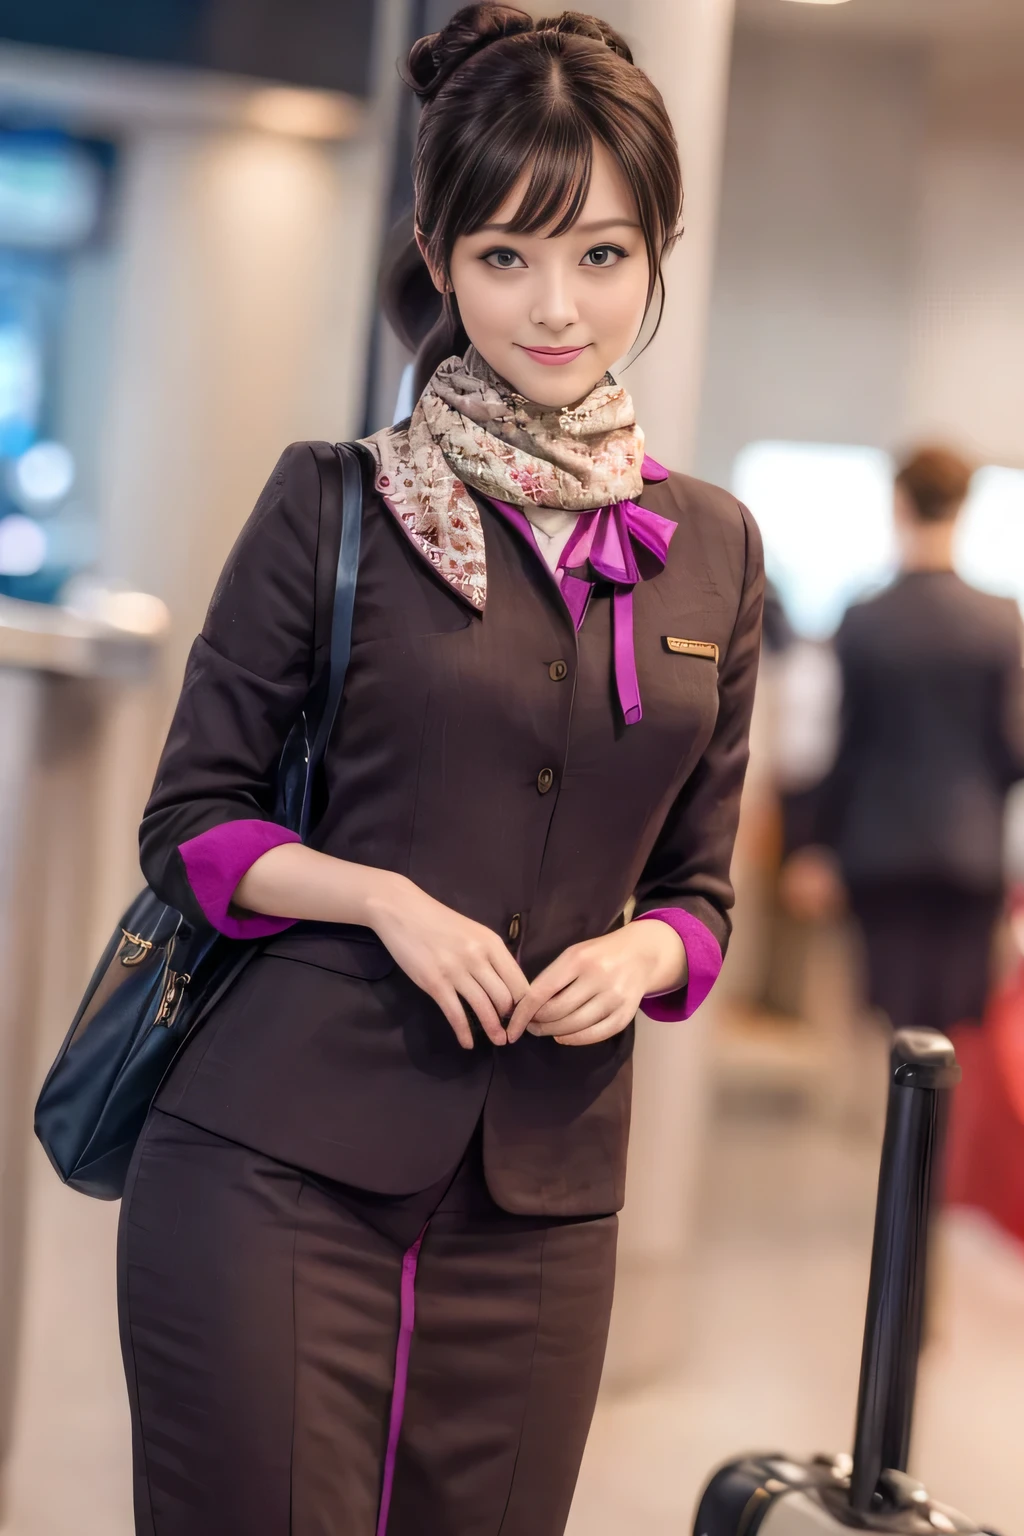 (Meisterwerk:1.2、höchste Qualität:1.2)、32K HDR、Hohe Auflösung、(allein、1 Mädchen、schlanke Figur)、（Eine realistische Reproduktion der Uniform des Kabinenpersonals von ETIHAD Airways）、 (Am Flughafenschalter, professionelle Beleuchtung)、Eine richtige Frau, schönes Gesicht,、（Langärmlige Uniform für Kabinenpersonal von ETIHAD Airways）、（ETIHAD Airways Kabinenpersonal-Uniformrock mit violettem Streifen auf der Vorderseite）、（Schal auf der Brust）、große Brüste、（lange Haare hoch、Haarknoten）、dunkelbraunes Haar、langer Schuss、（（Tolle Hände：2.0））、（（Harmonische Körperproportionen：1.5））、（（Normale Gliedmaßen：2.0））、（（Normal finger：2.0））、（（zarte Augen：2.0））、（（Normale Augen：2.0））)、Schöne Stehhaltung、lächeln